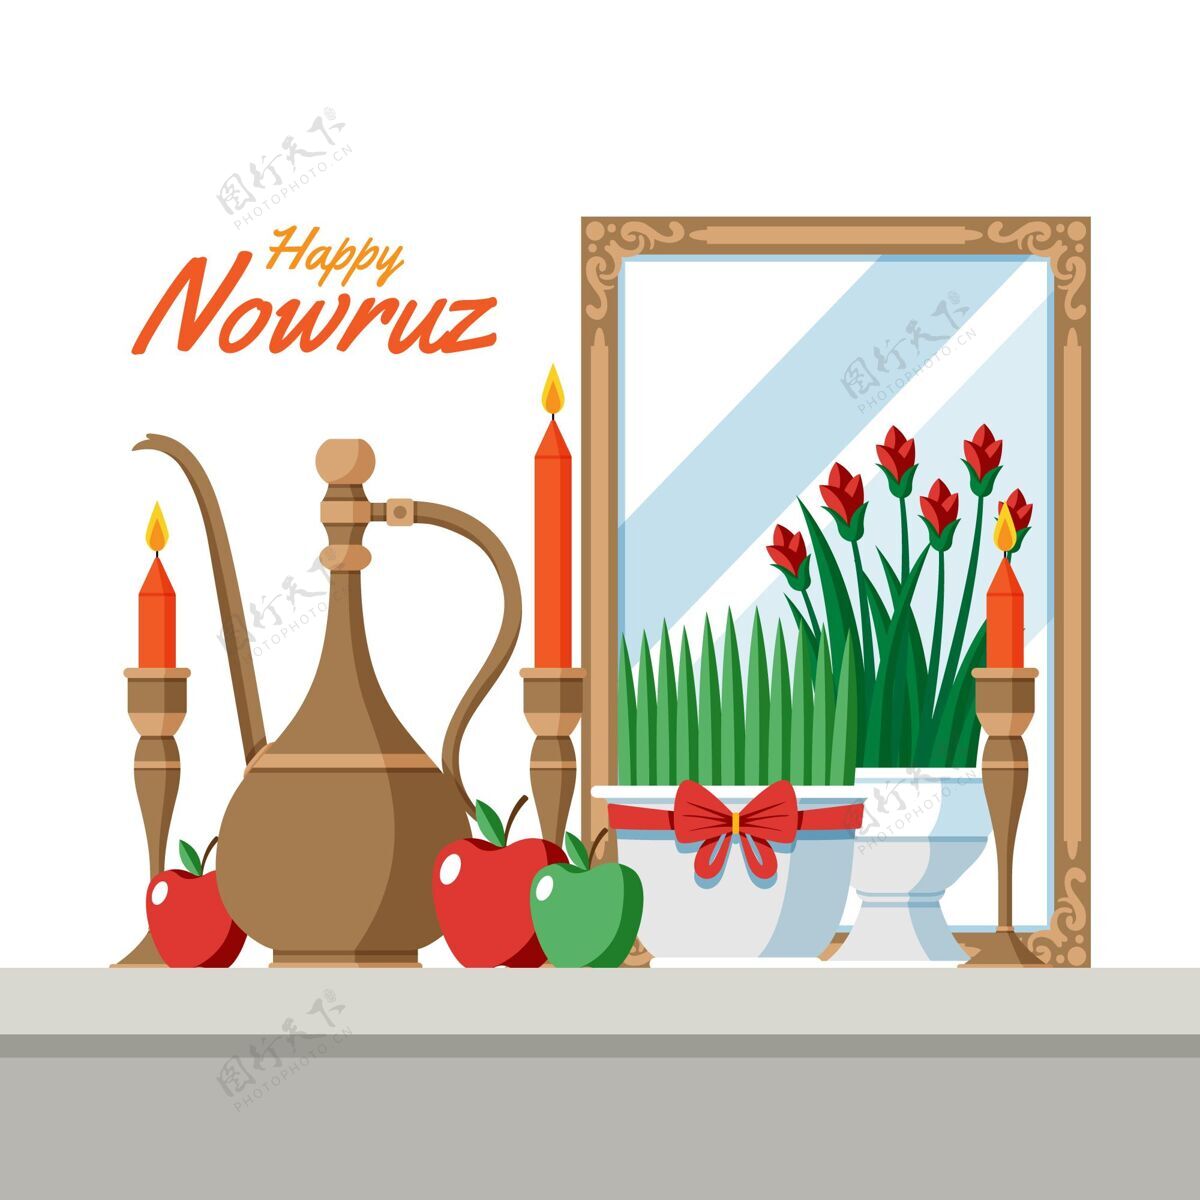 nowruz快乐nowruz插画与萌芽和镜子萌芽平面设计平面